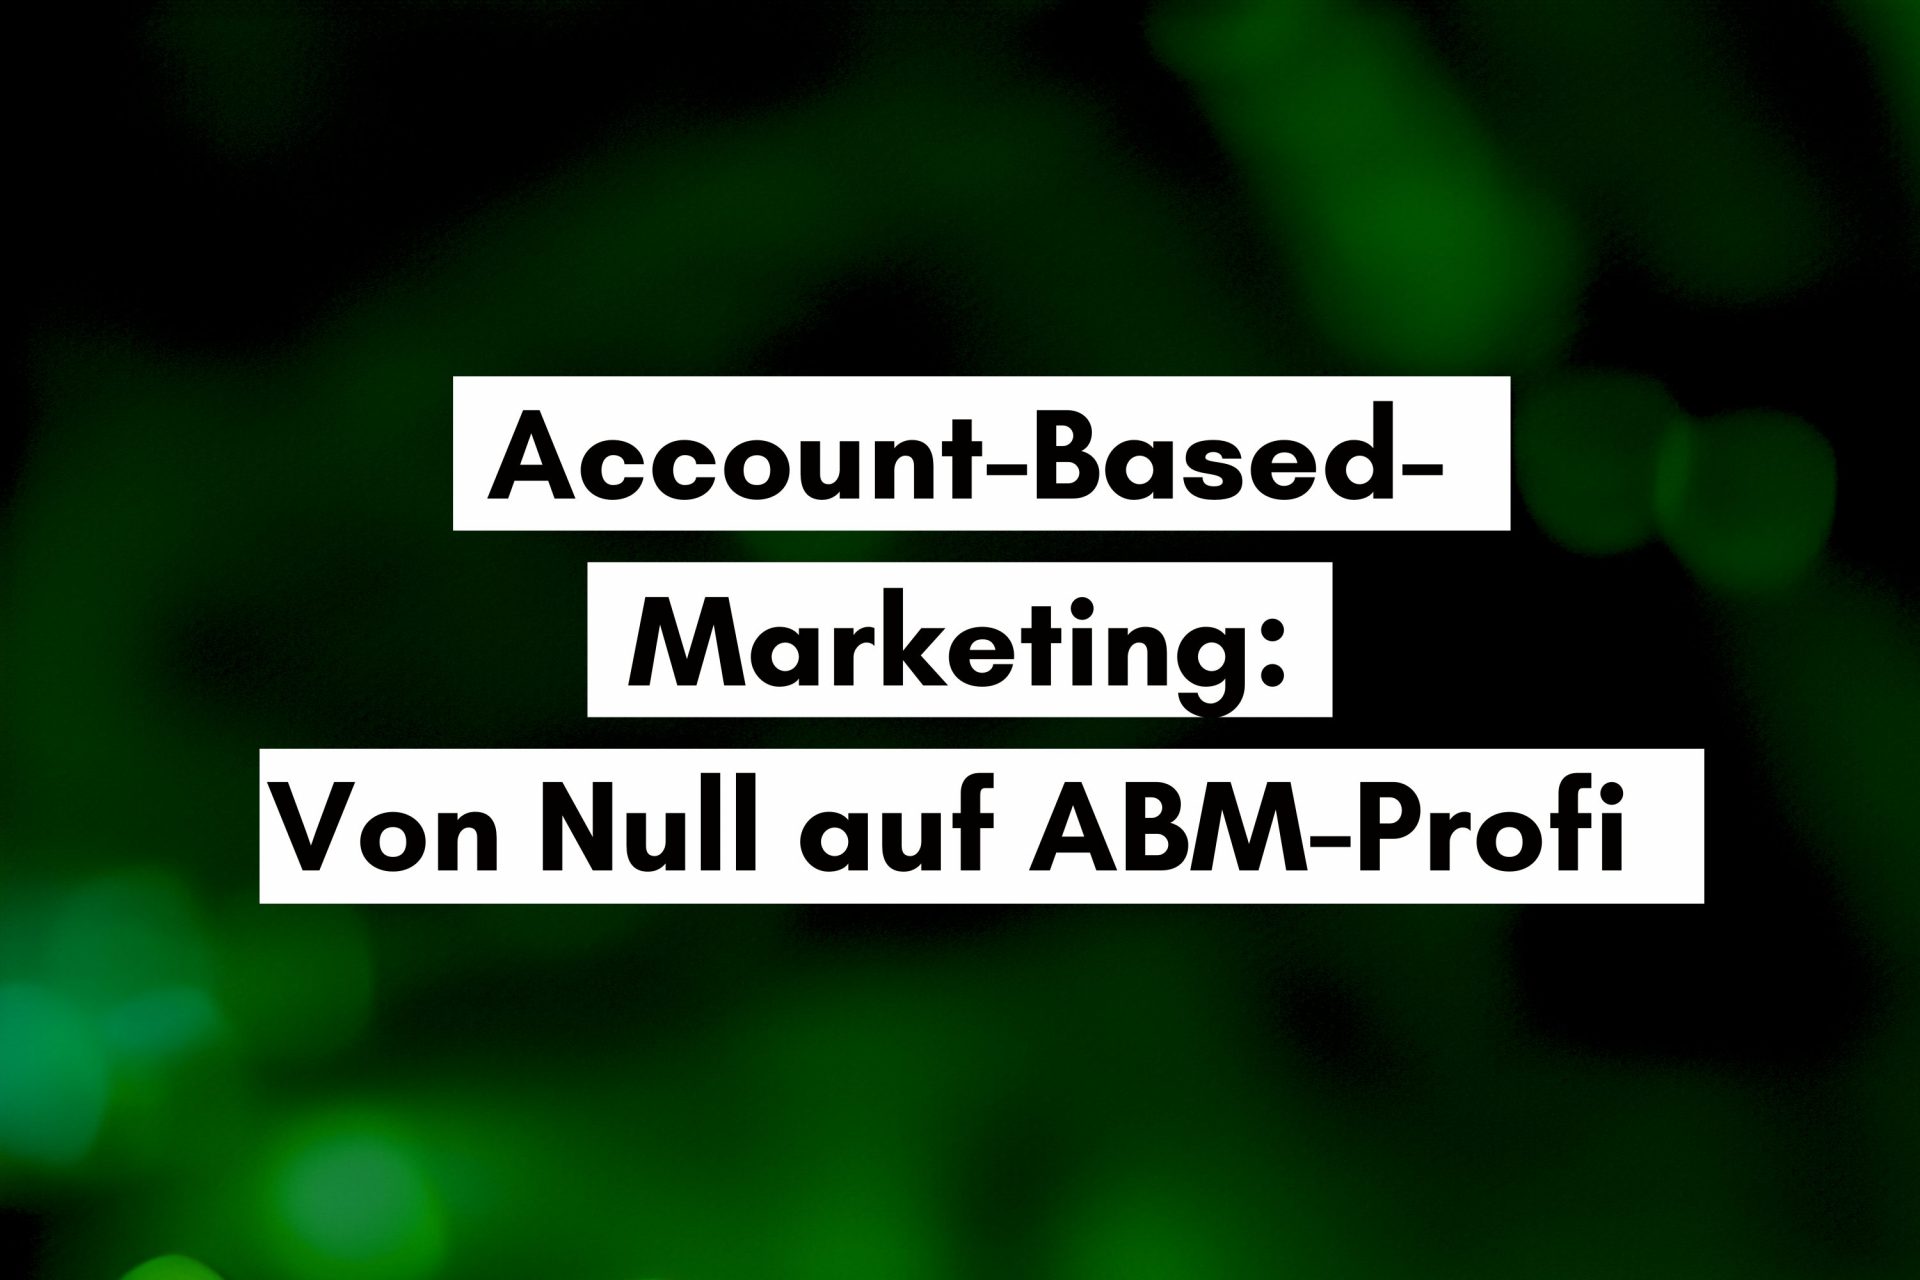 Von Null auf ABM-Profi: Ein strategisches Framework für B2B Marketing und Sales